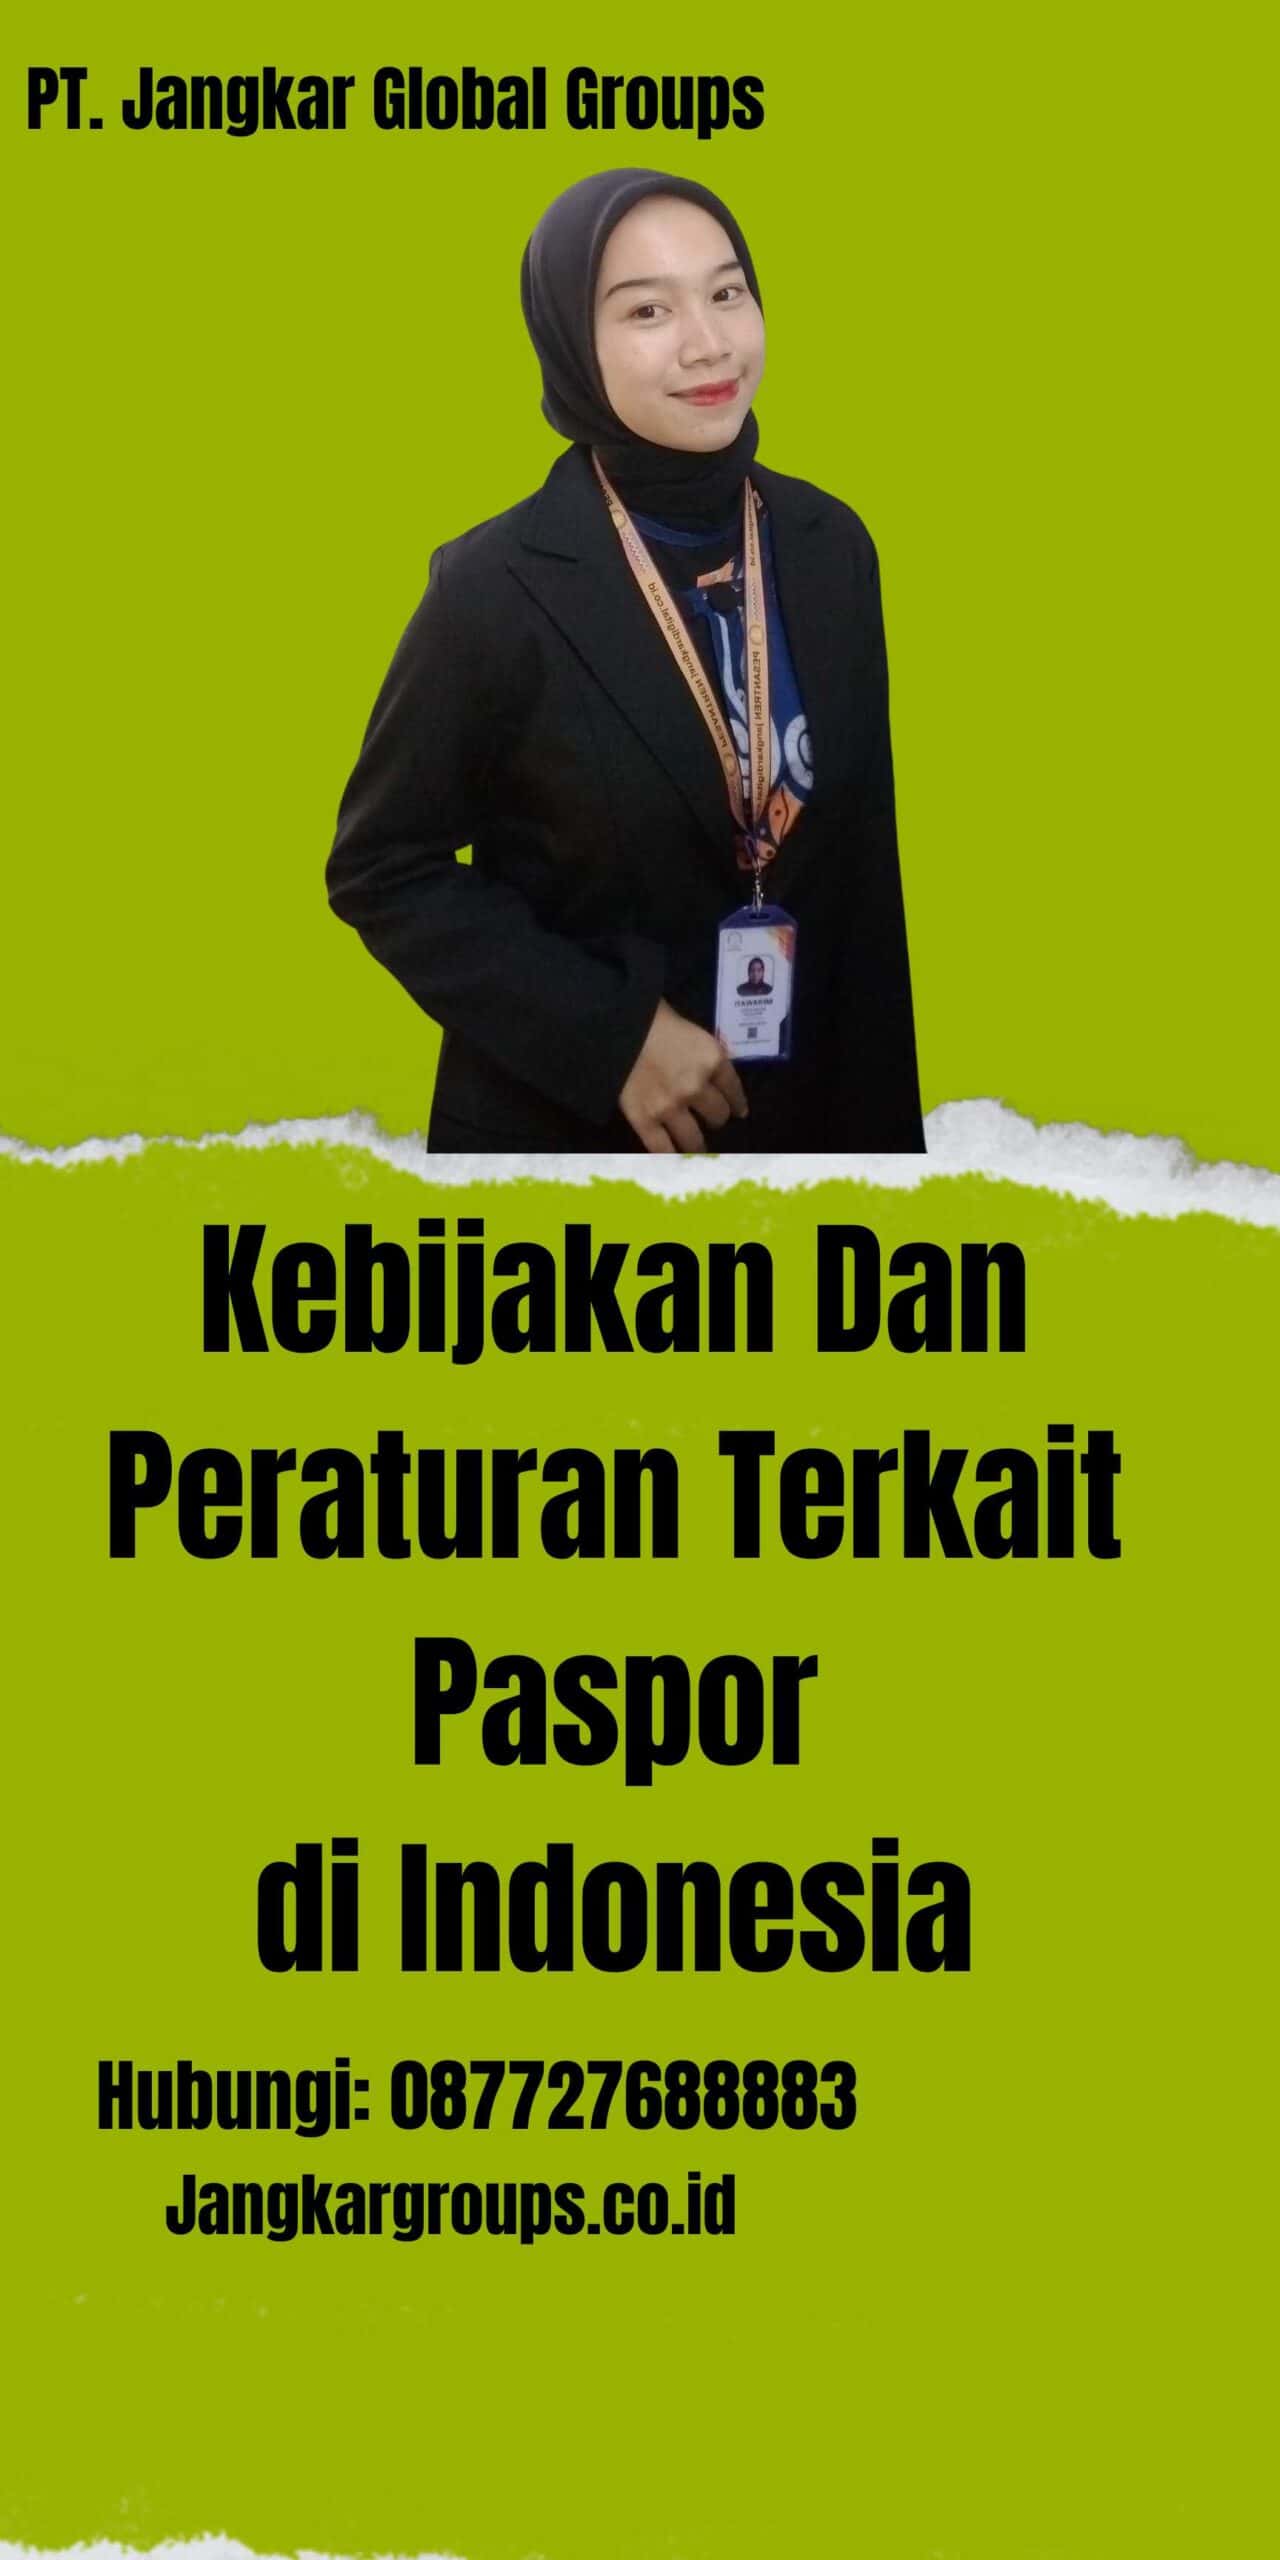 Kebijakan Dan Peraturan Terkait Paspor di Indonesia